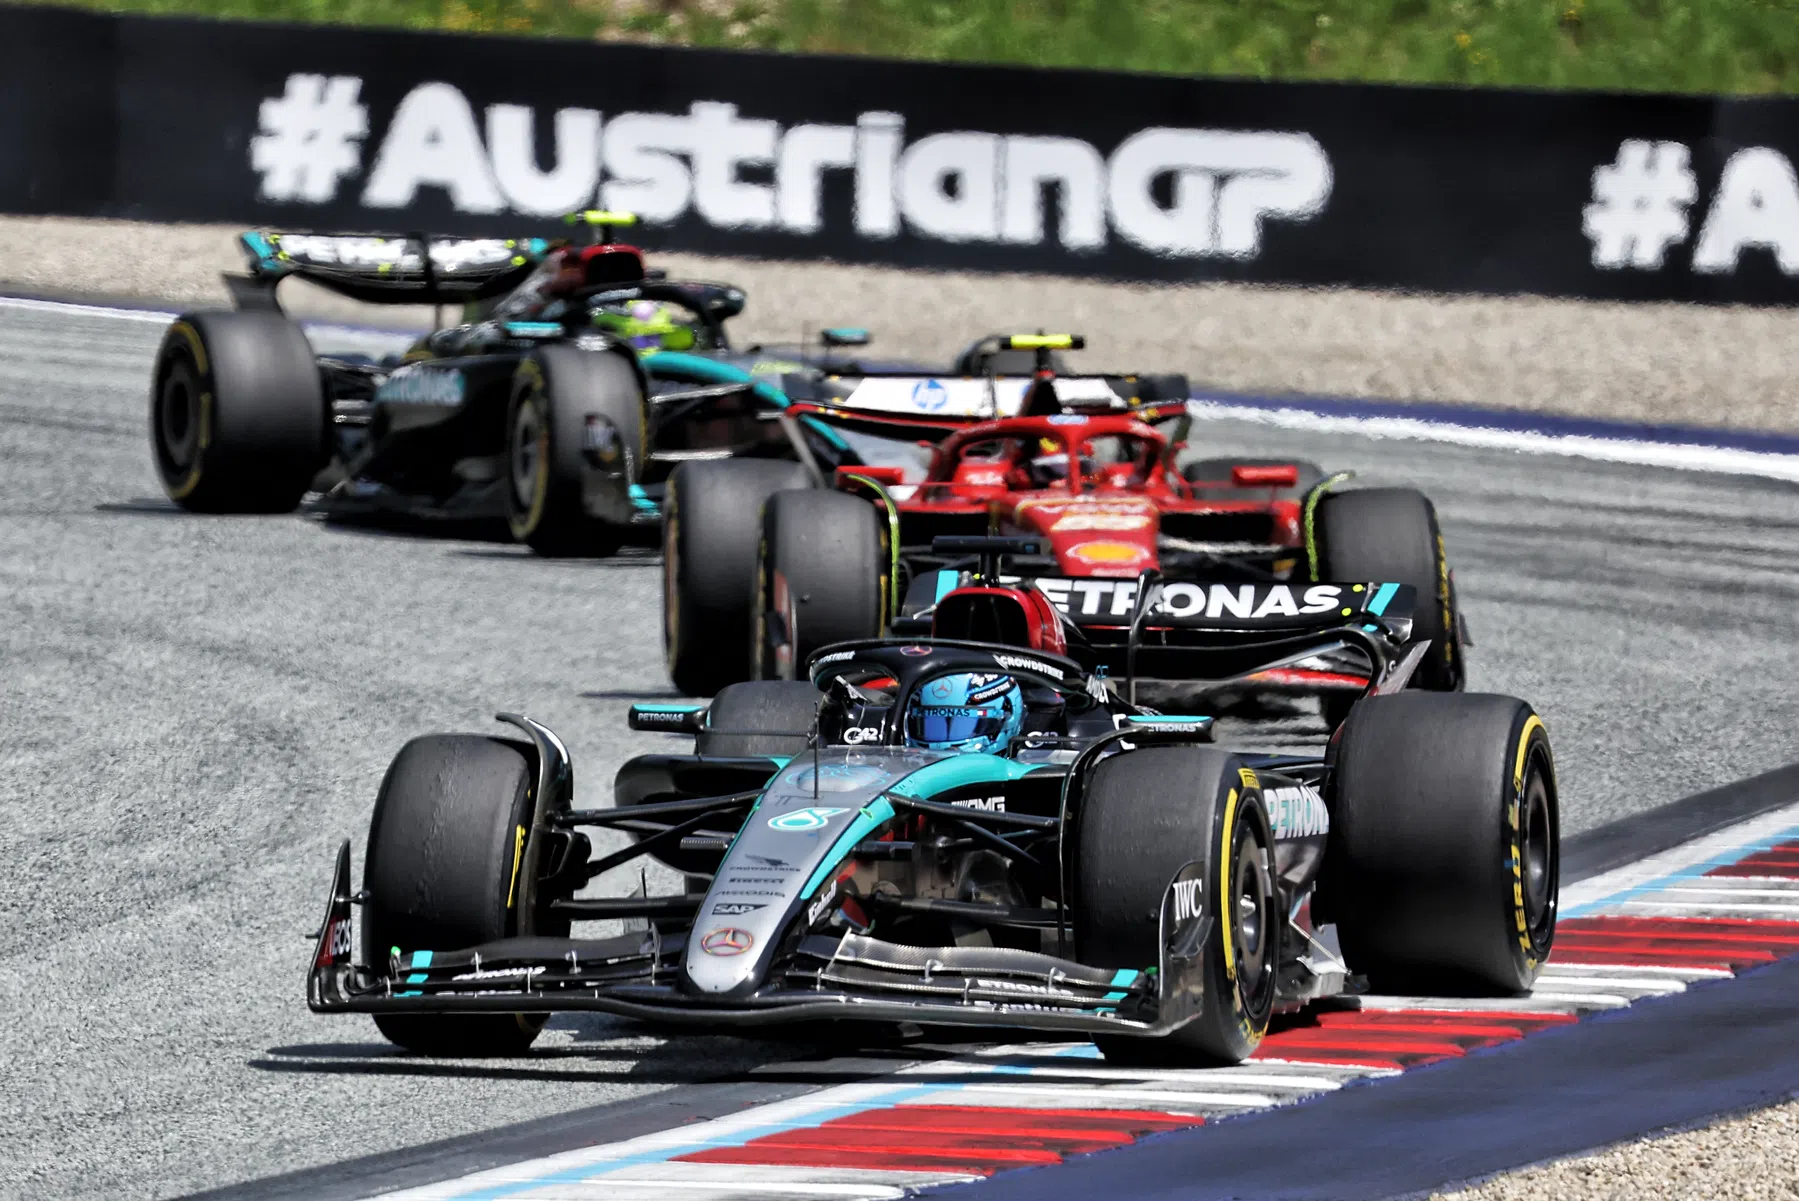 La Mercedes ha fatto sacrifici per le qualifiche in Austria